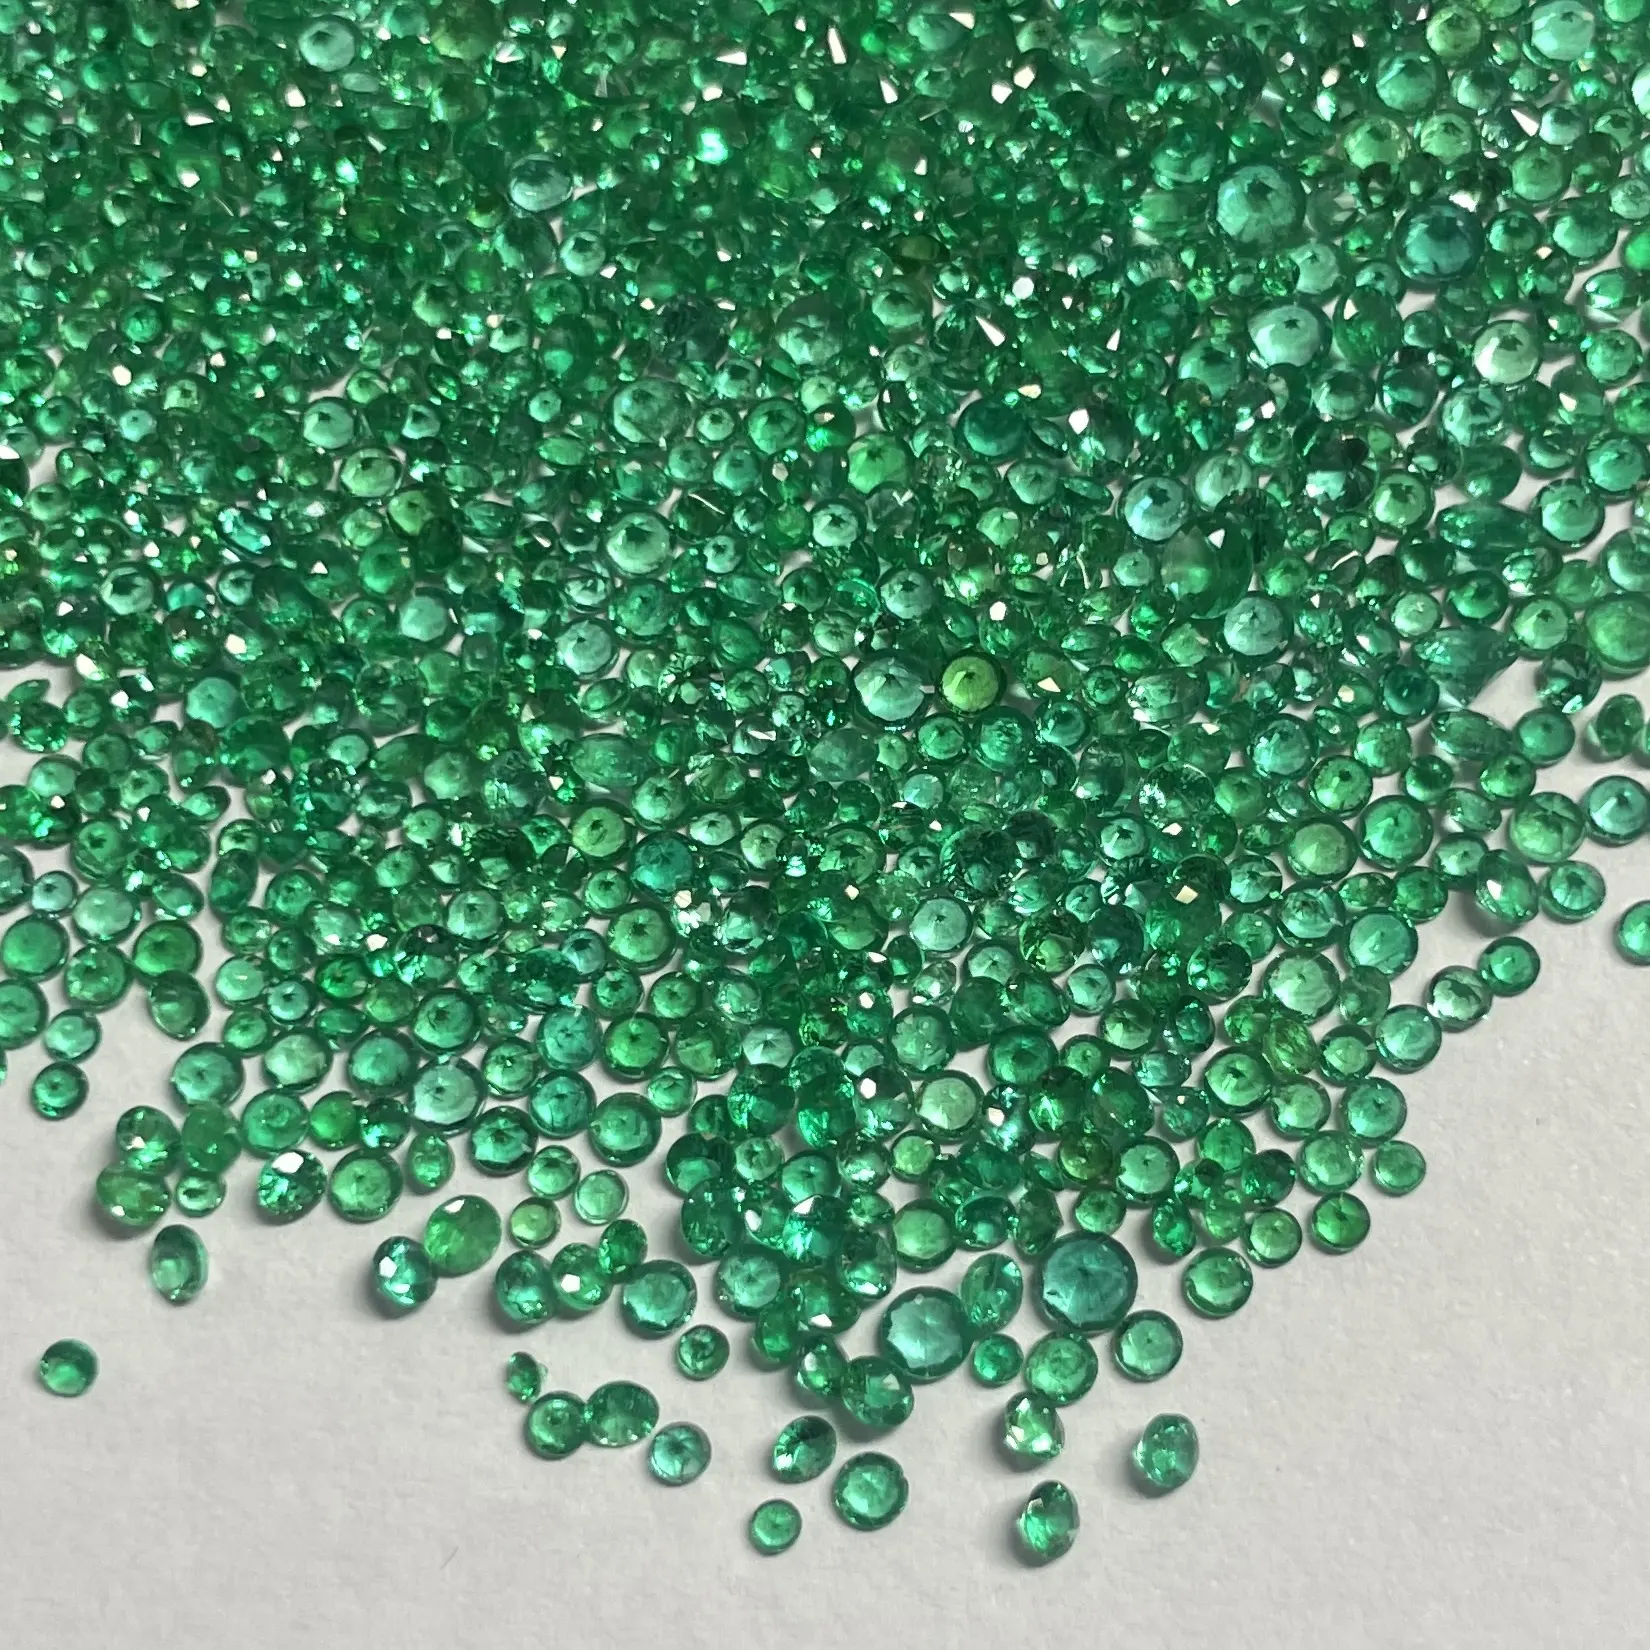 2mm 2.5mm 3mm naturel propre vert émeraude éthiopienne à facettes diamant rond coupé pierre précieuse en vrac vente en gros bague bijoux en pierre précieuse